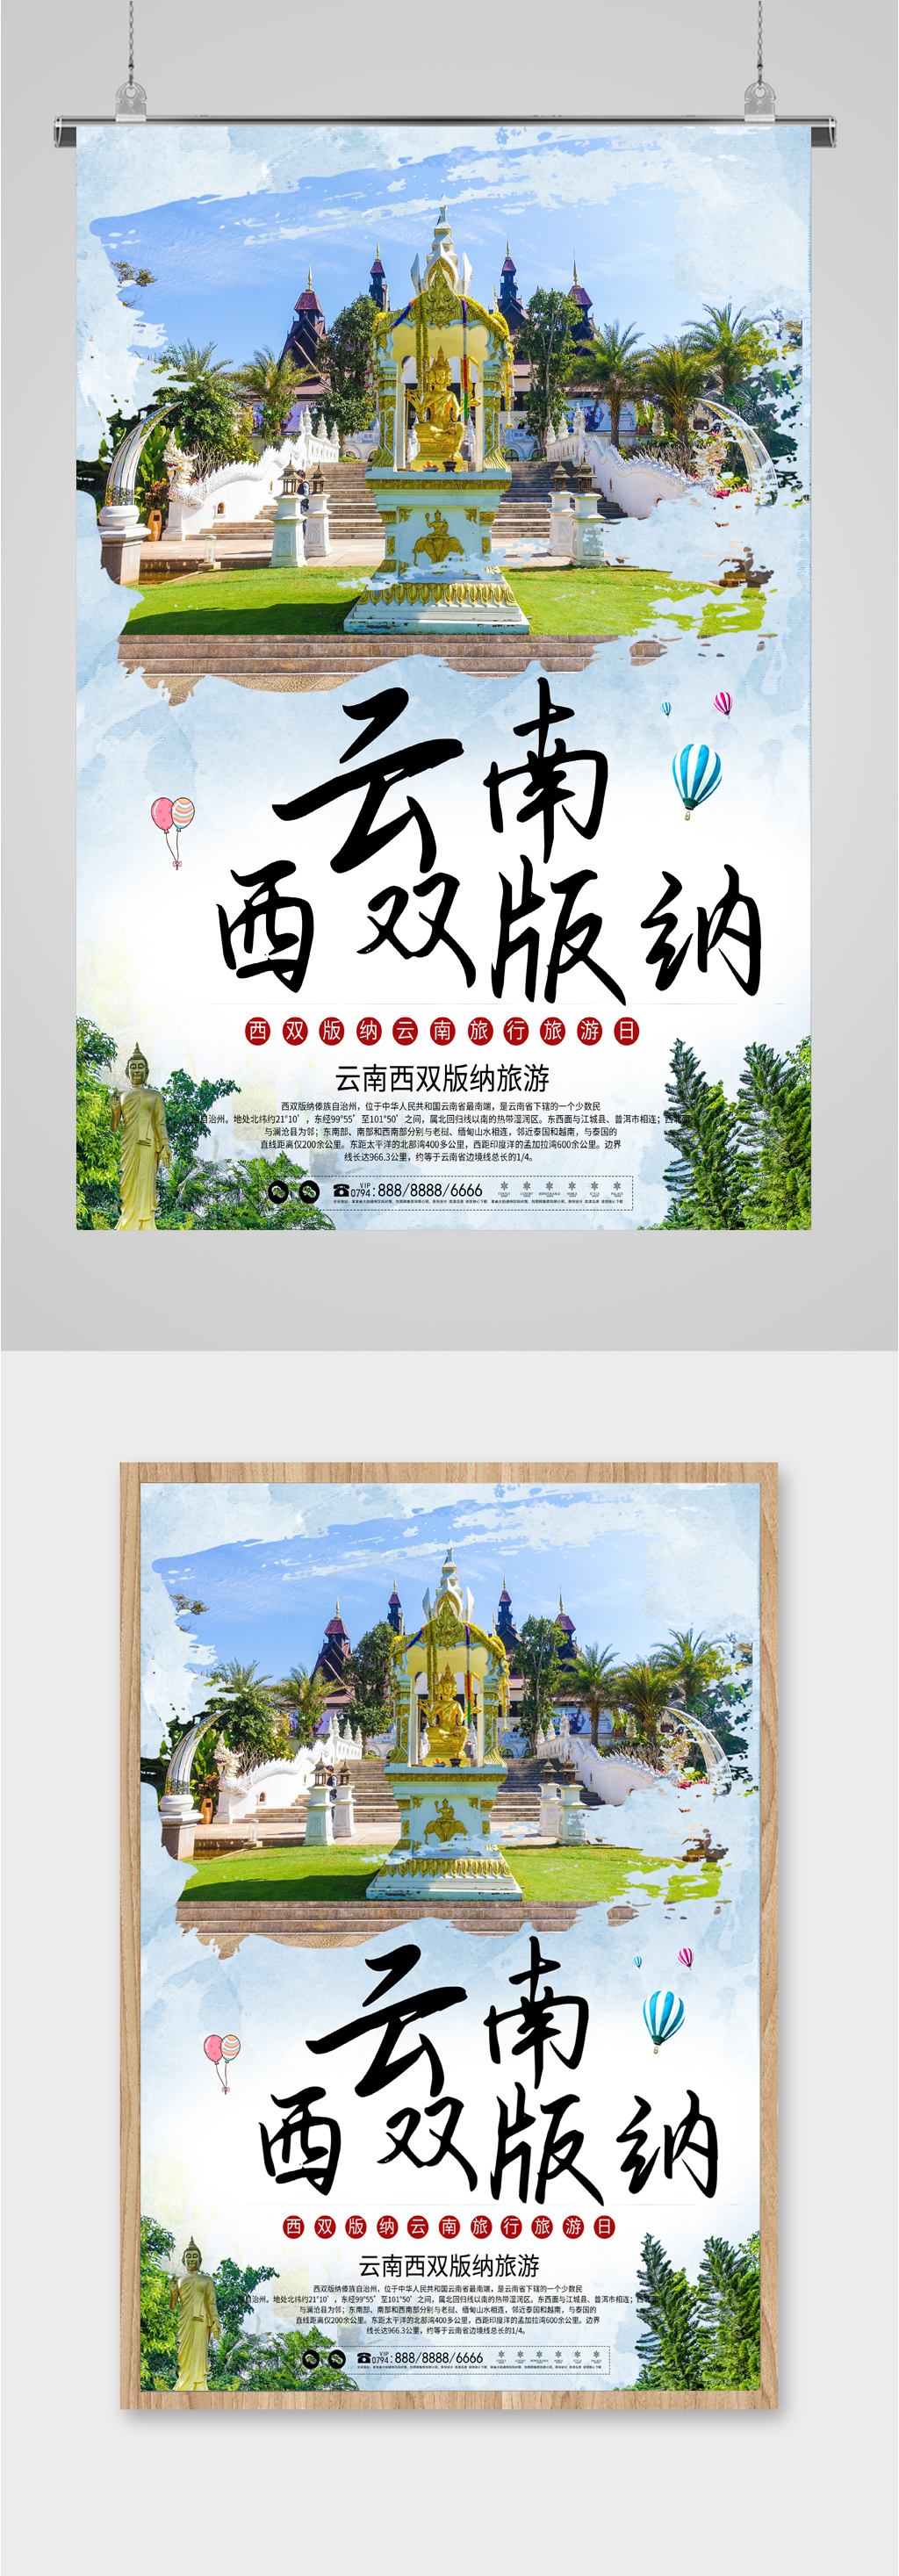 西双版纳旅游宣传海报立即下载西双版纳风景旅行海报云南西双版纳旅游